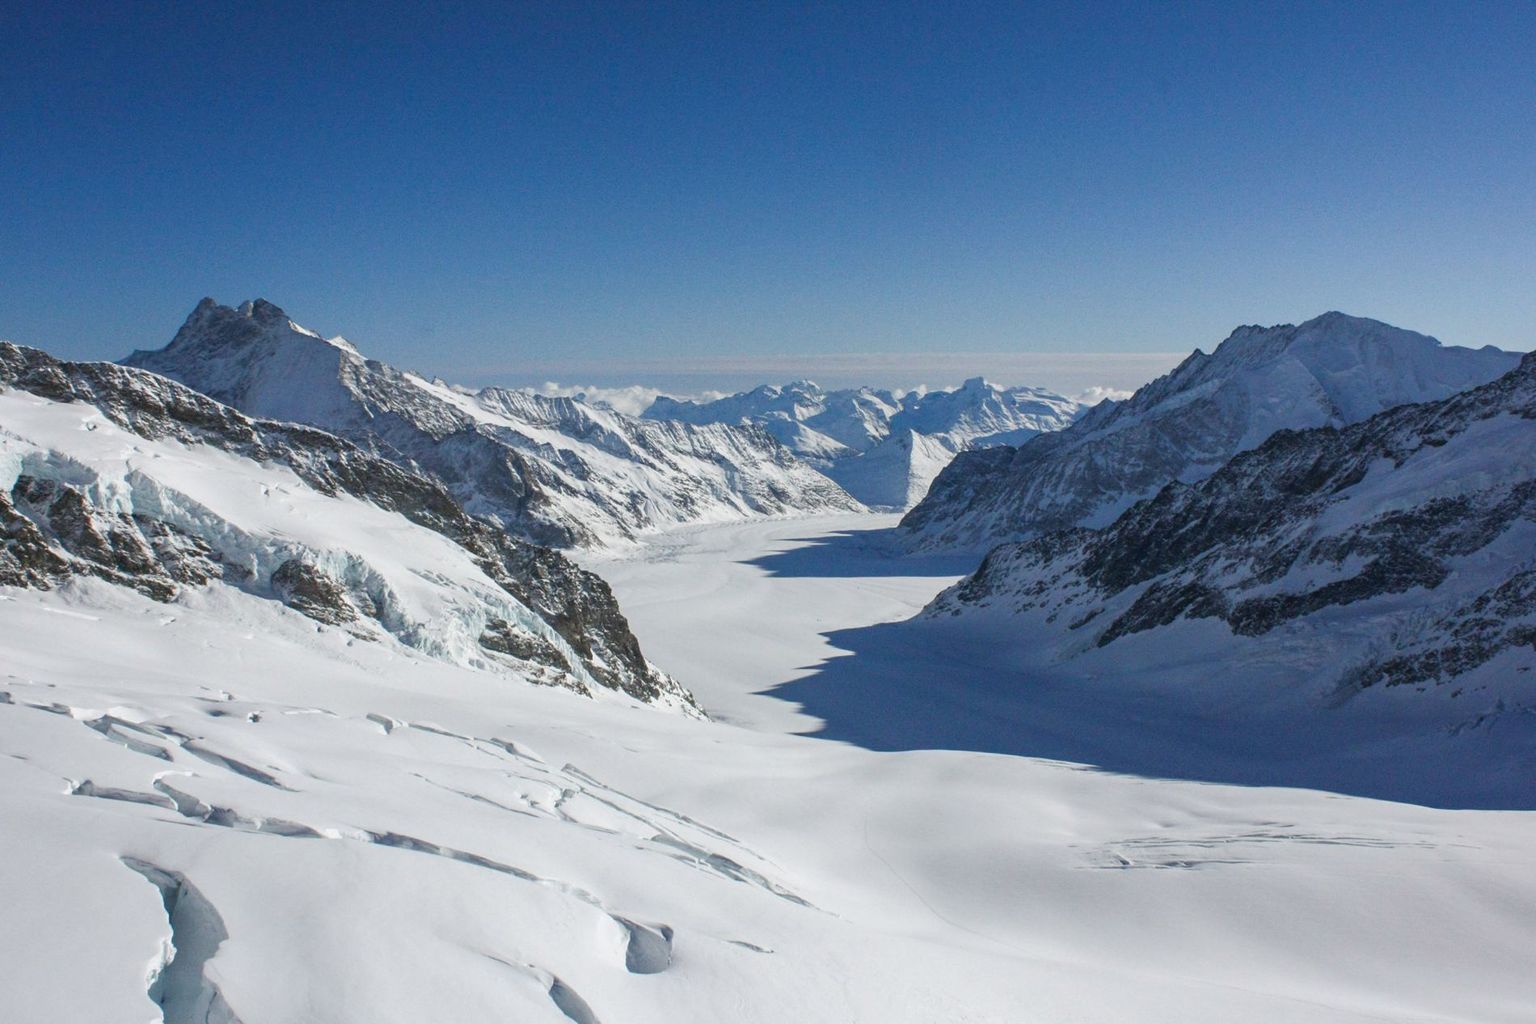 Aletsch Glacier from Jungfraujoch (BE/VS)